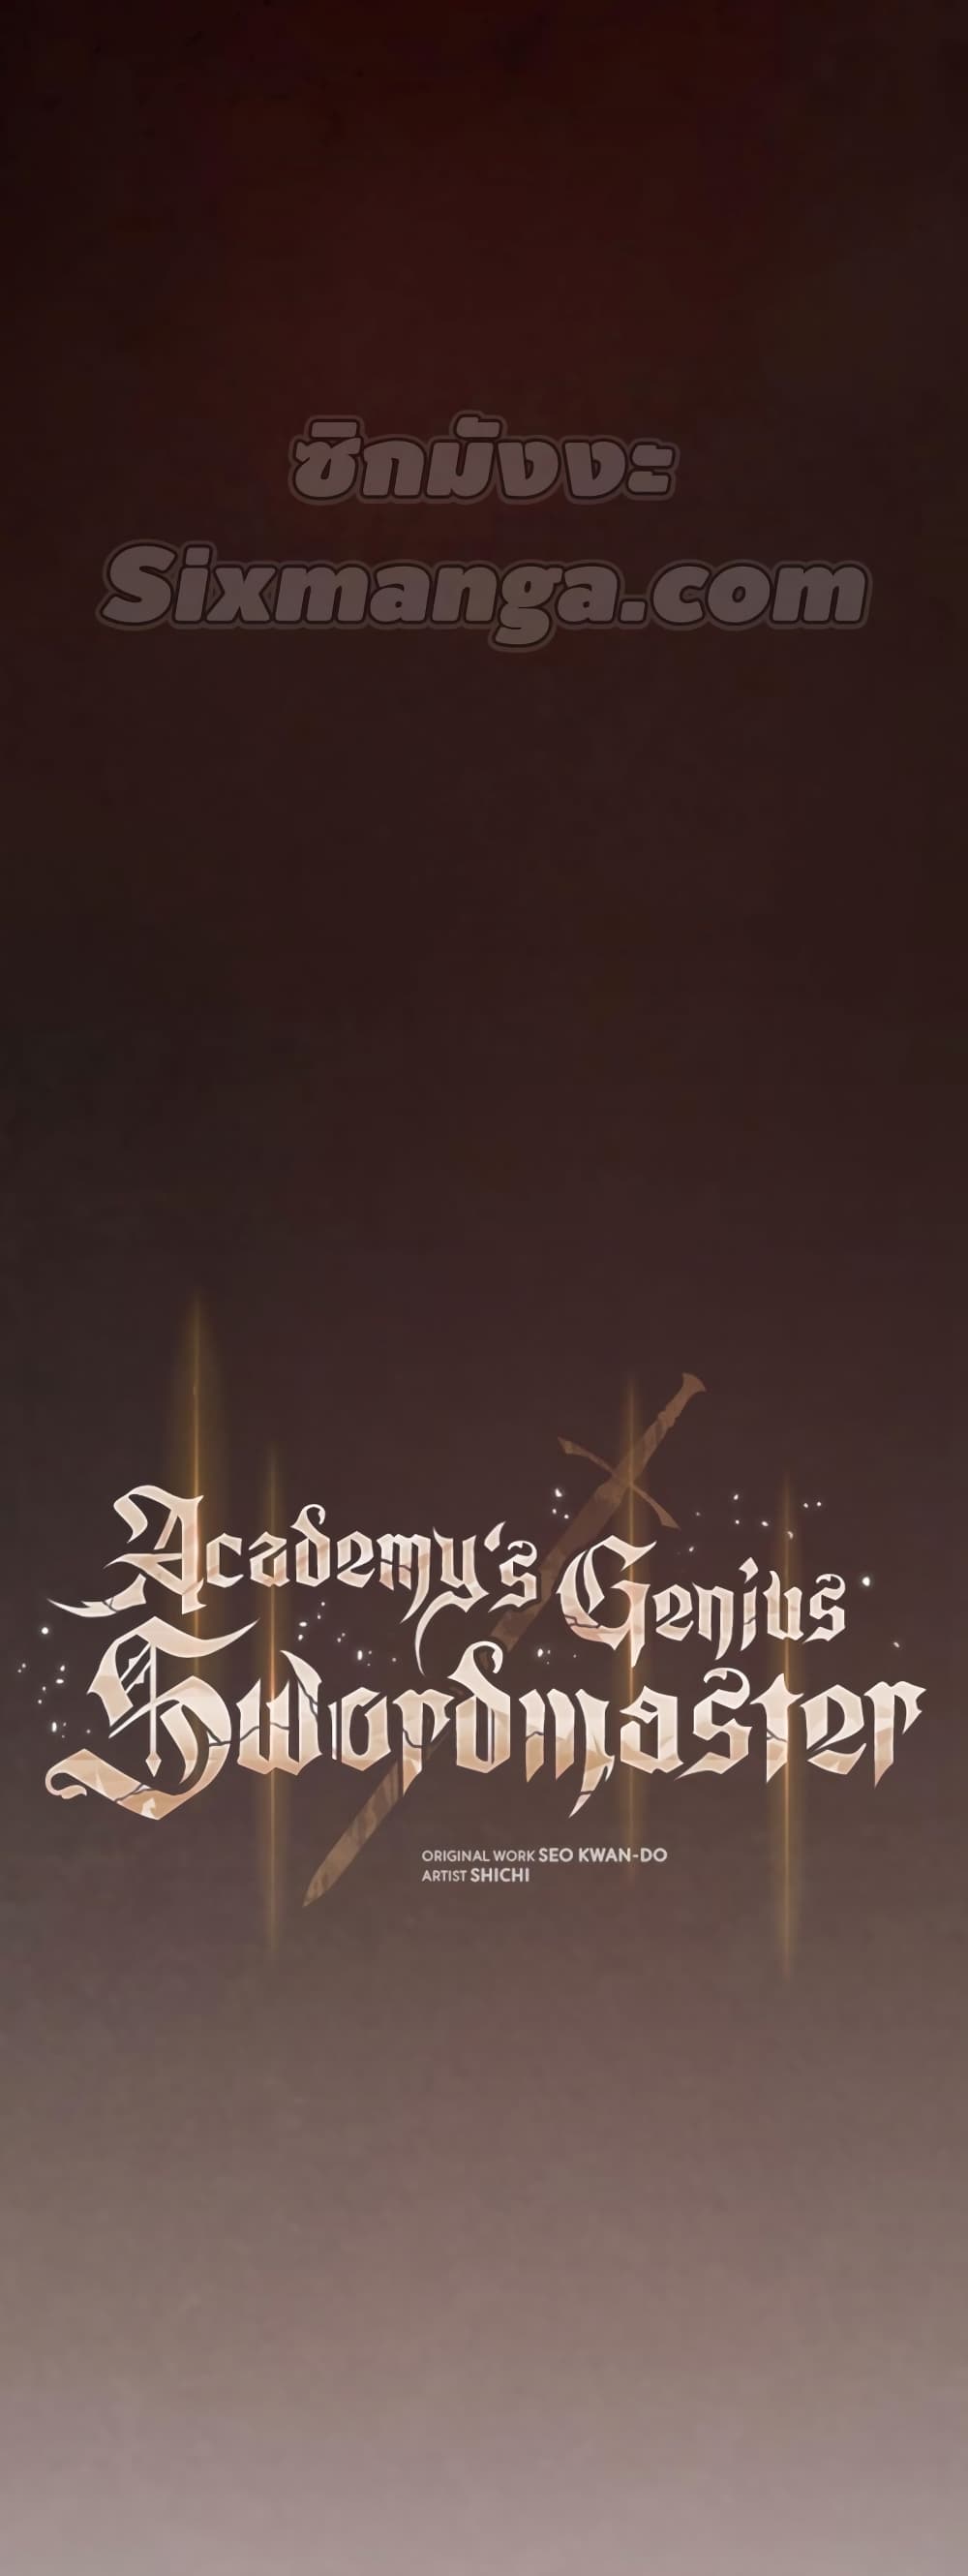 Academy’s Genius Swordmaster 12-12